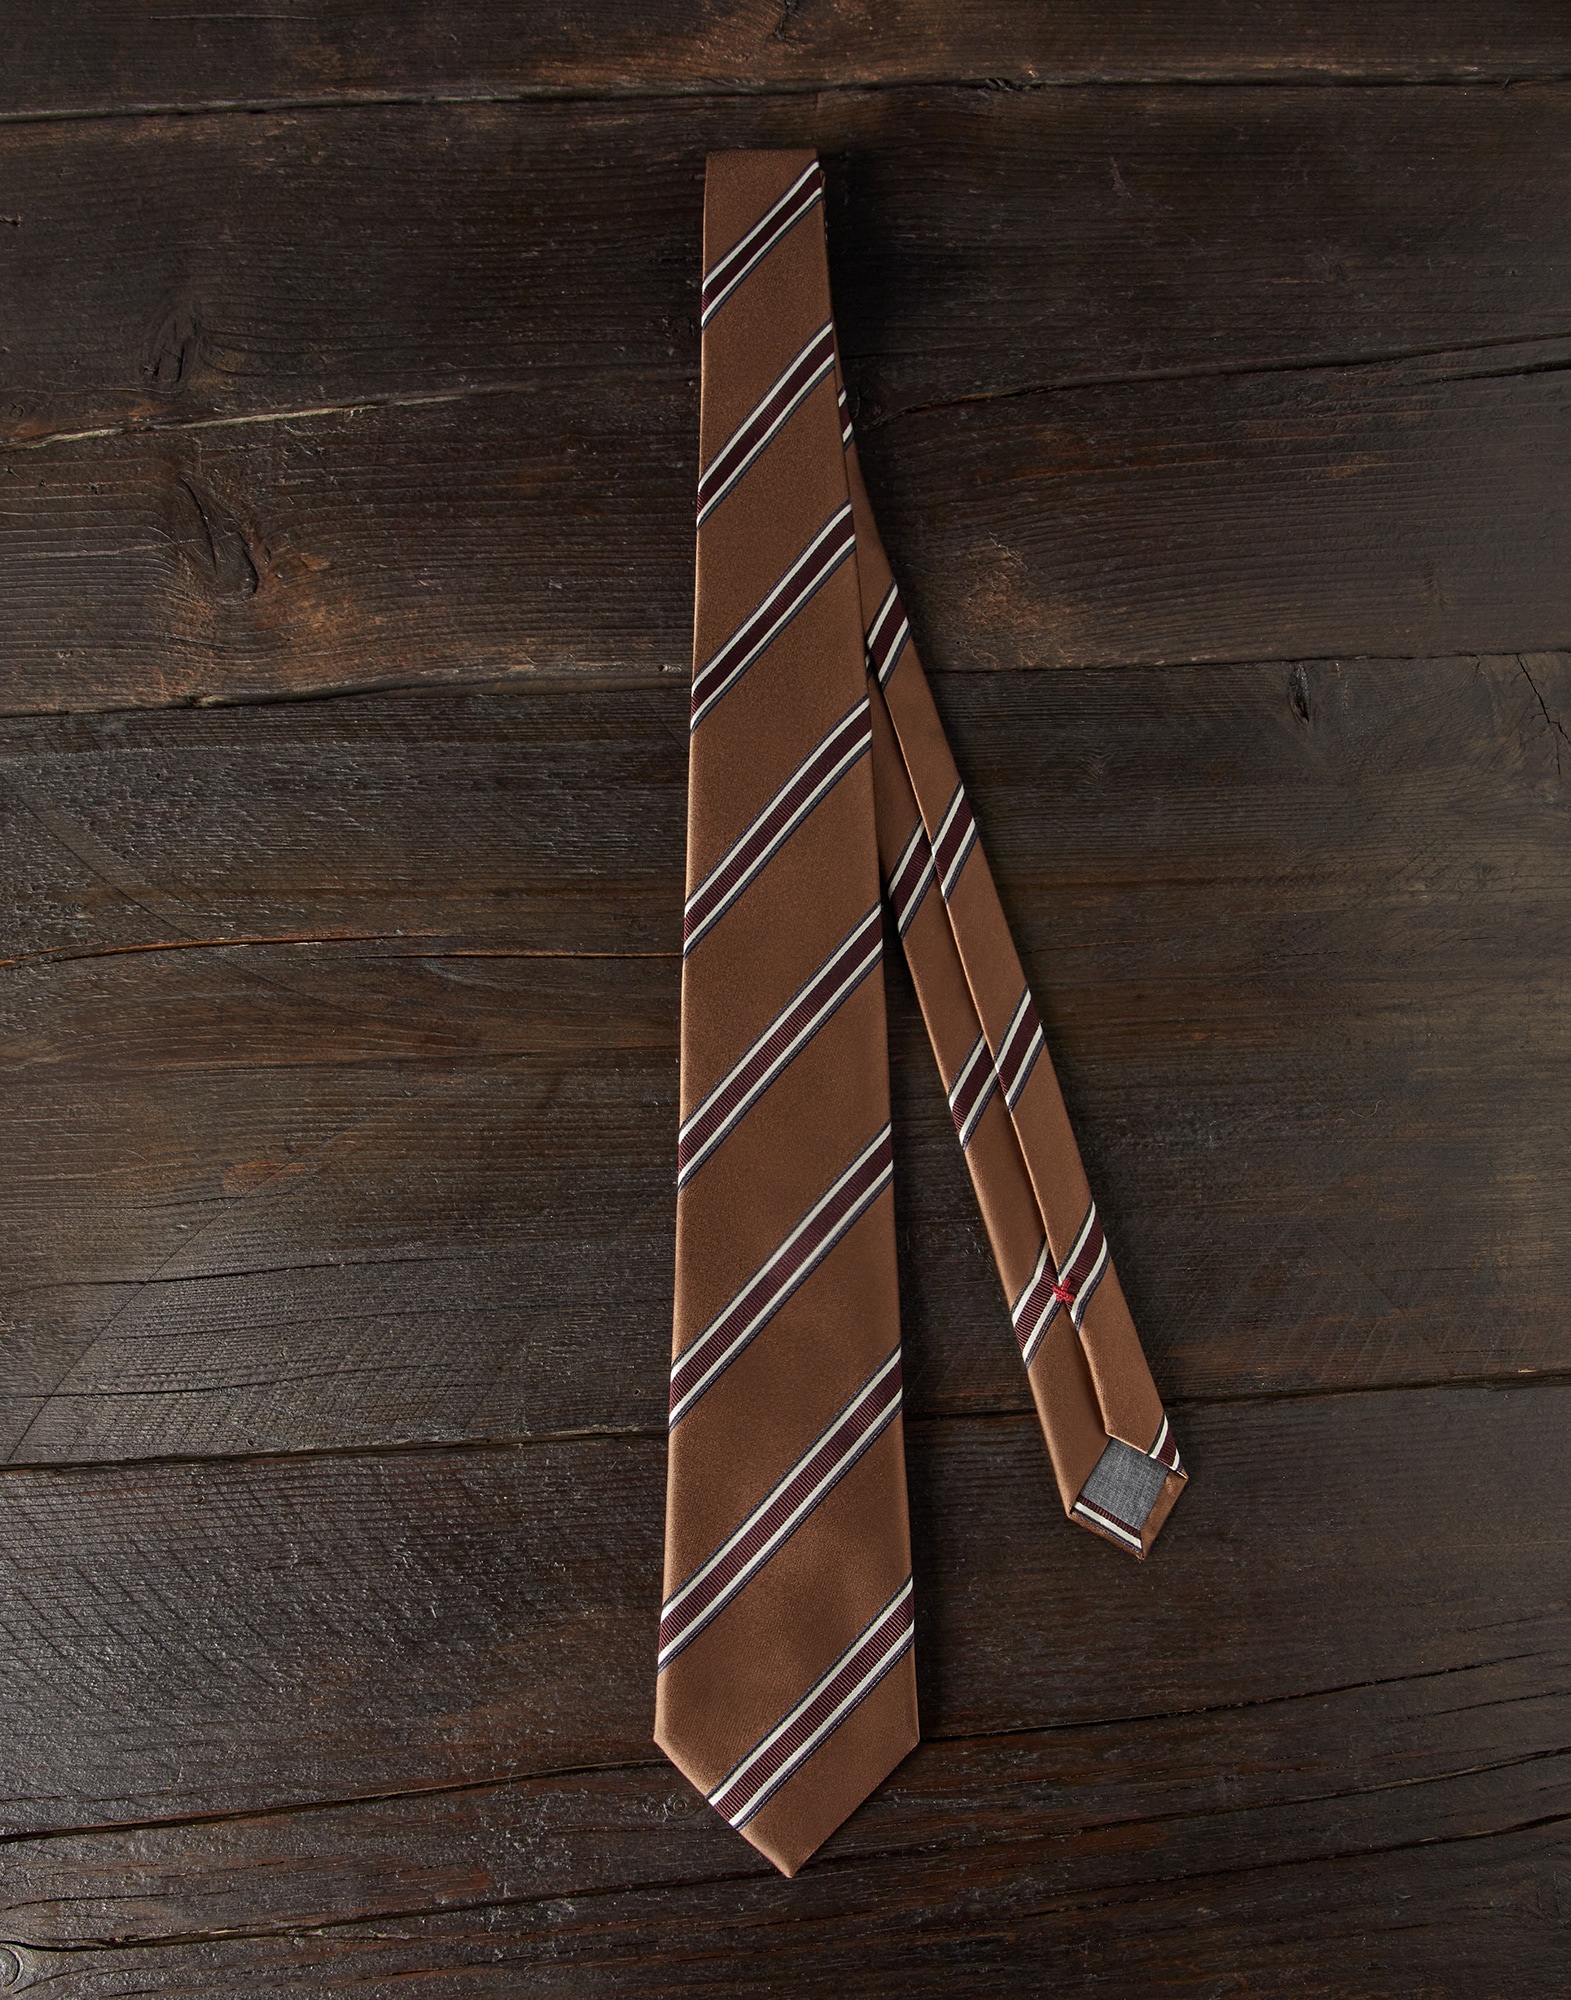 Krawatte aus Seide mit Struktur-Streifen